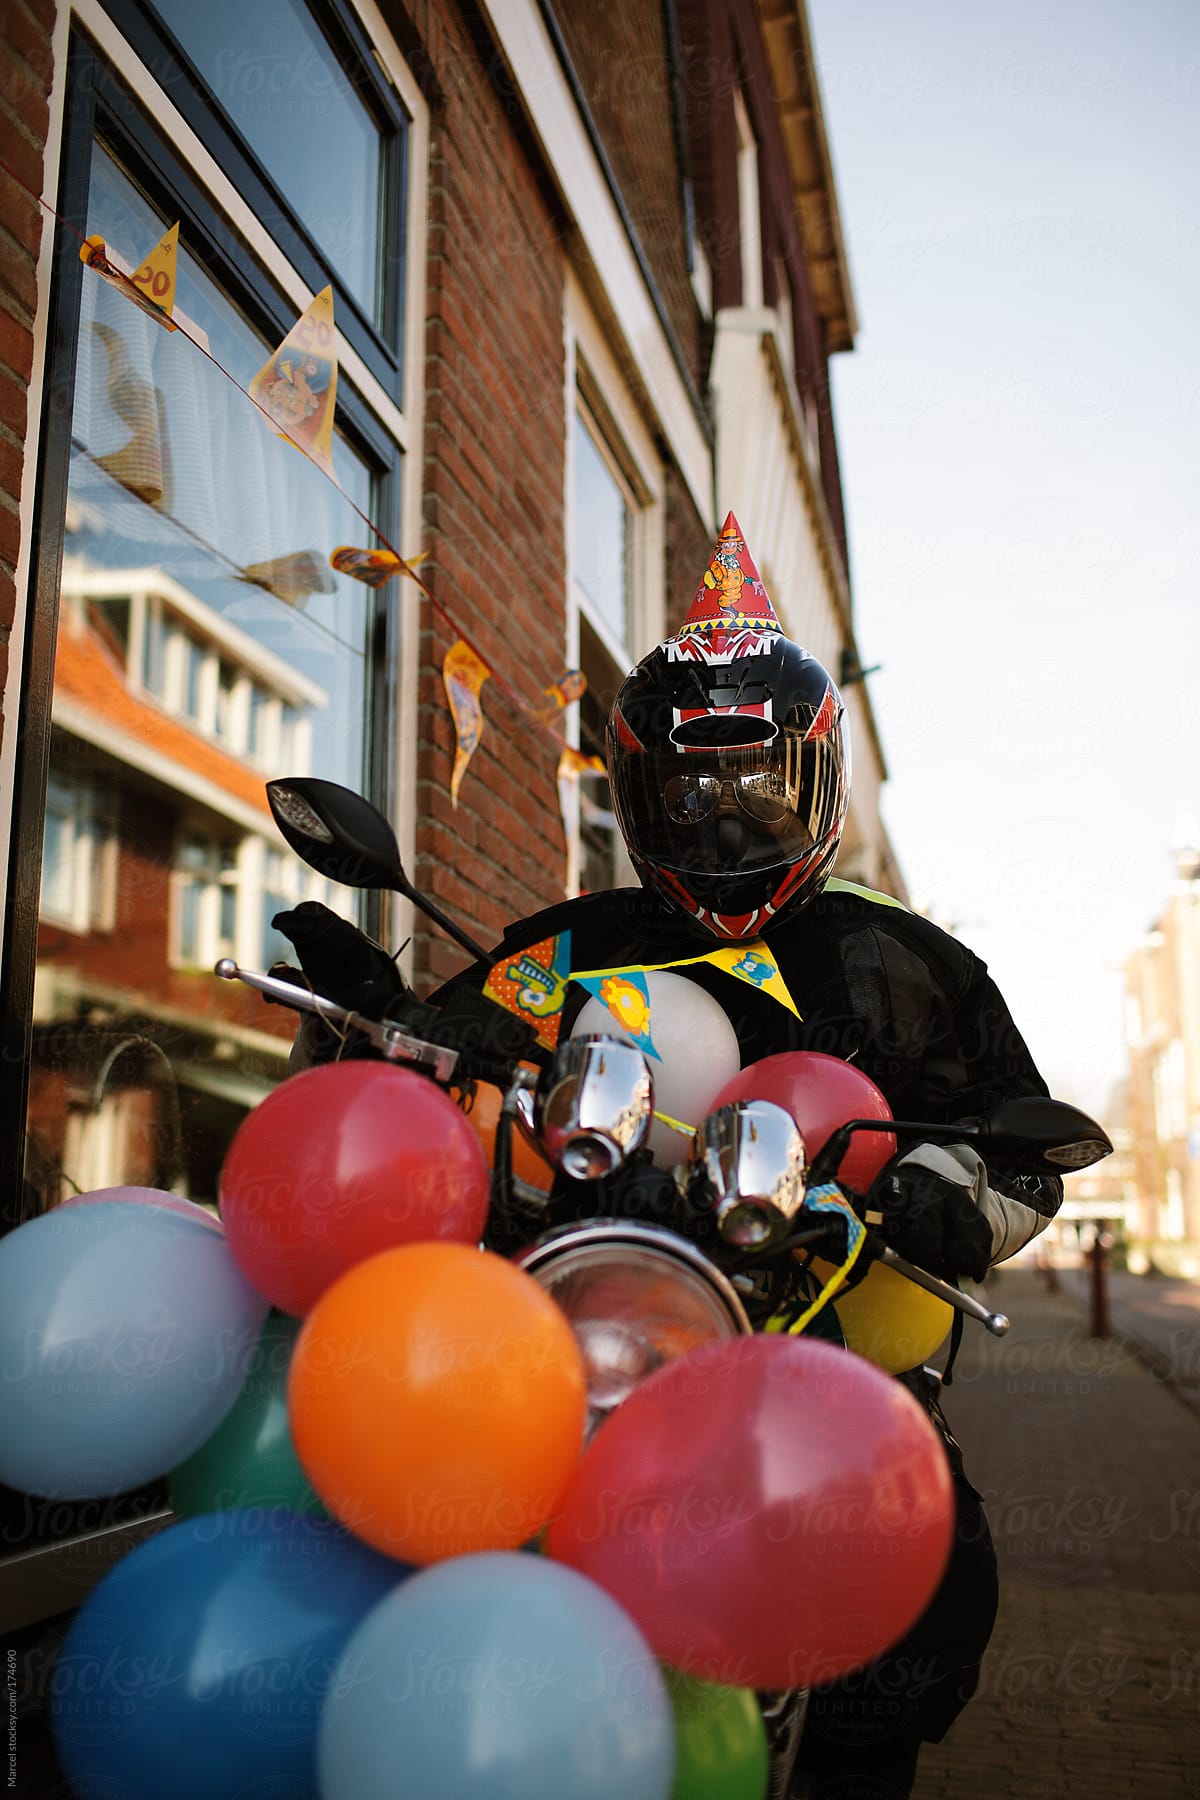 Motorcyclist dummy celebrating a birthday